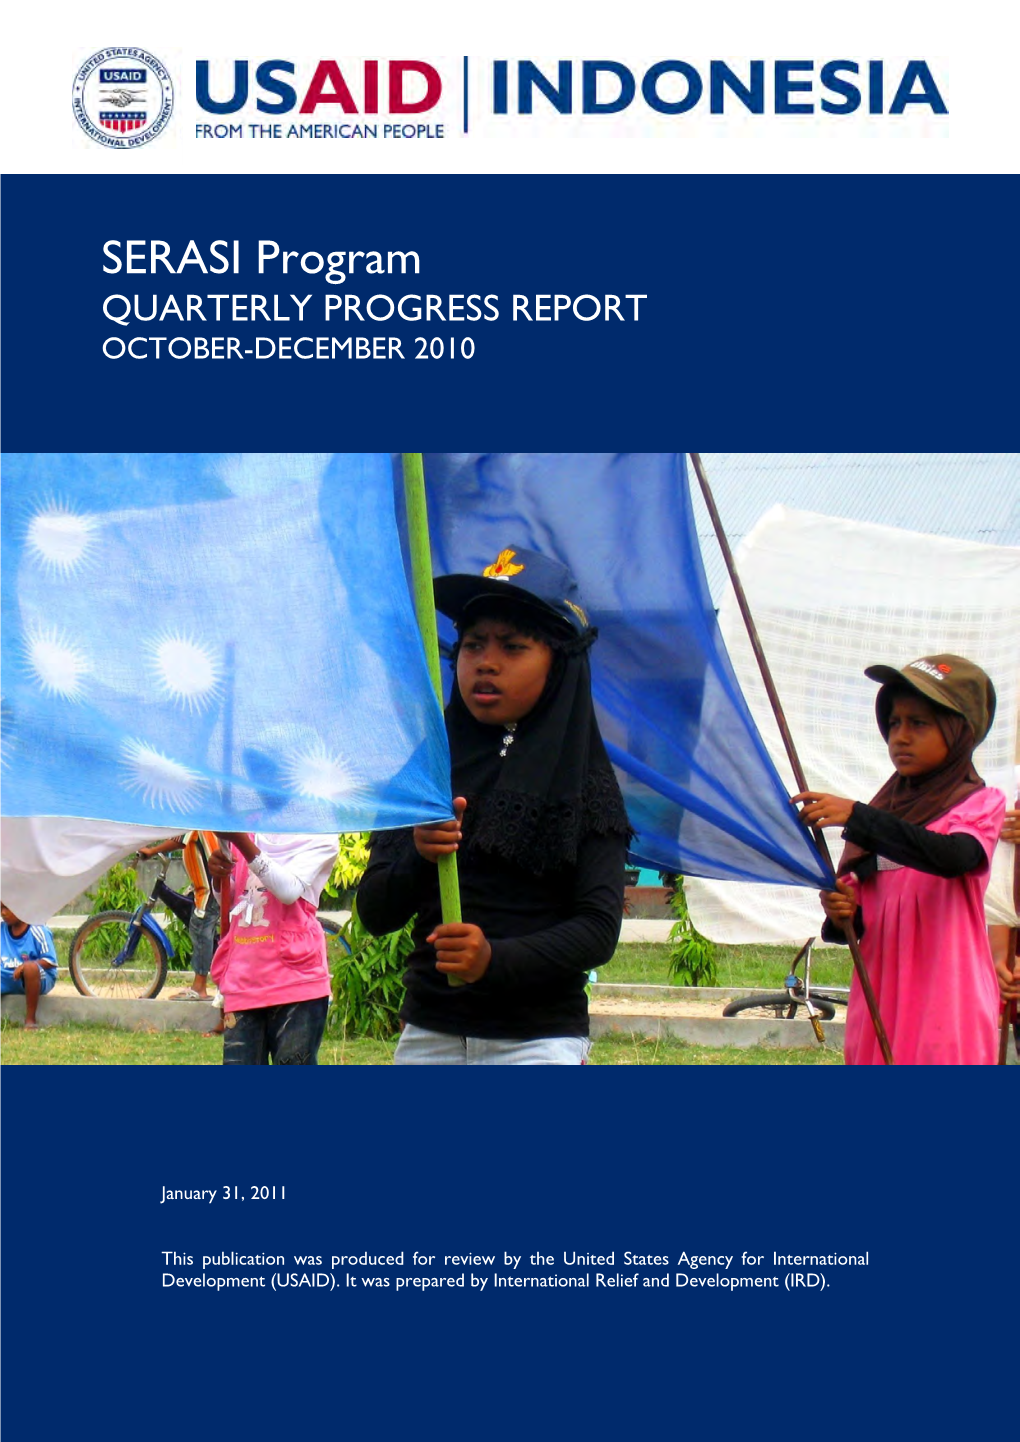 SERASI Program